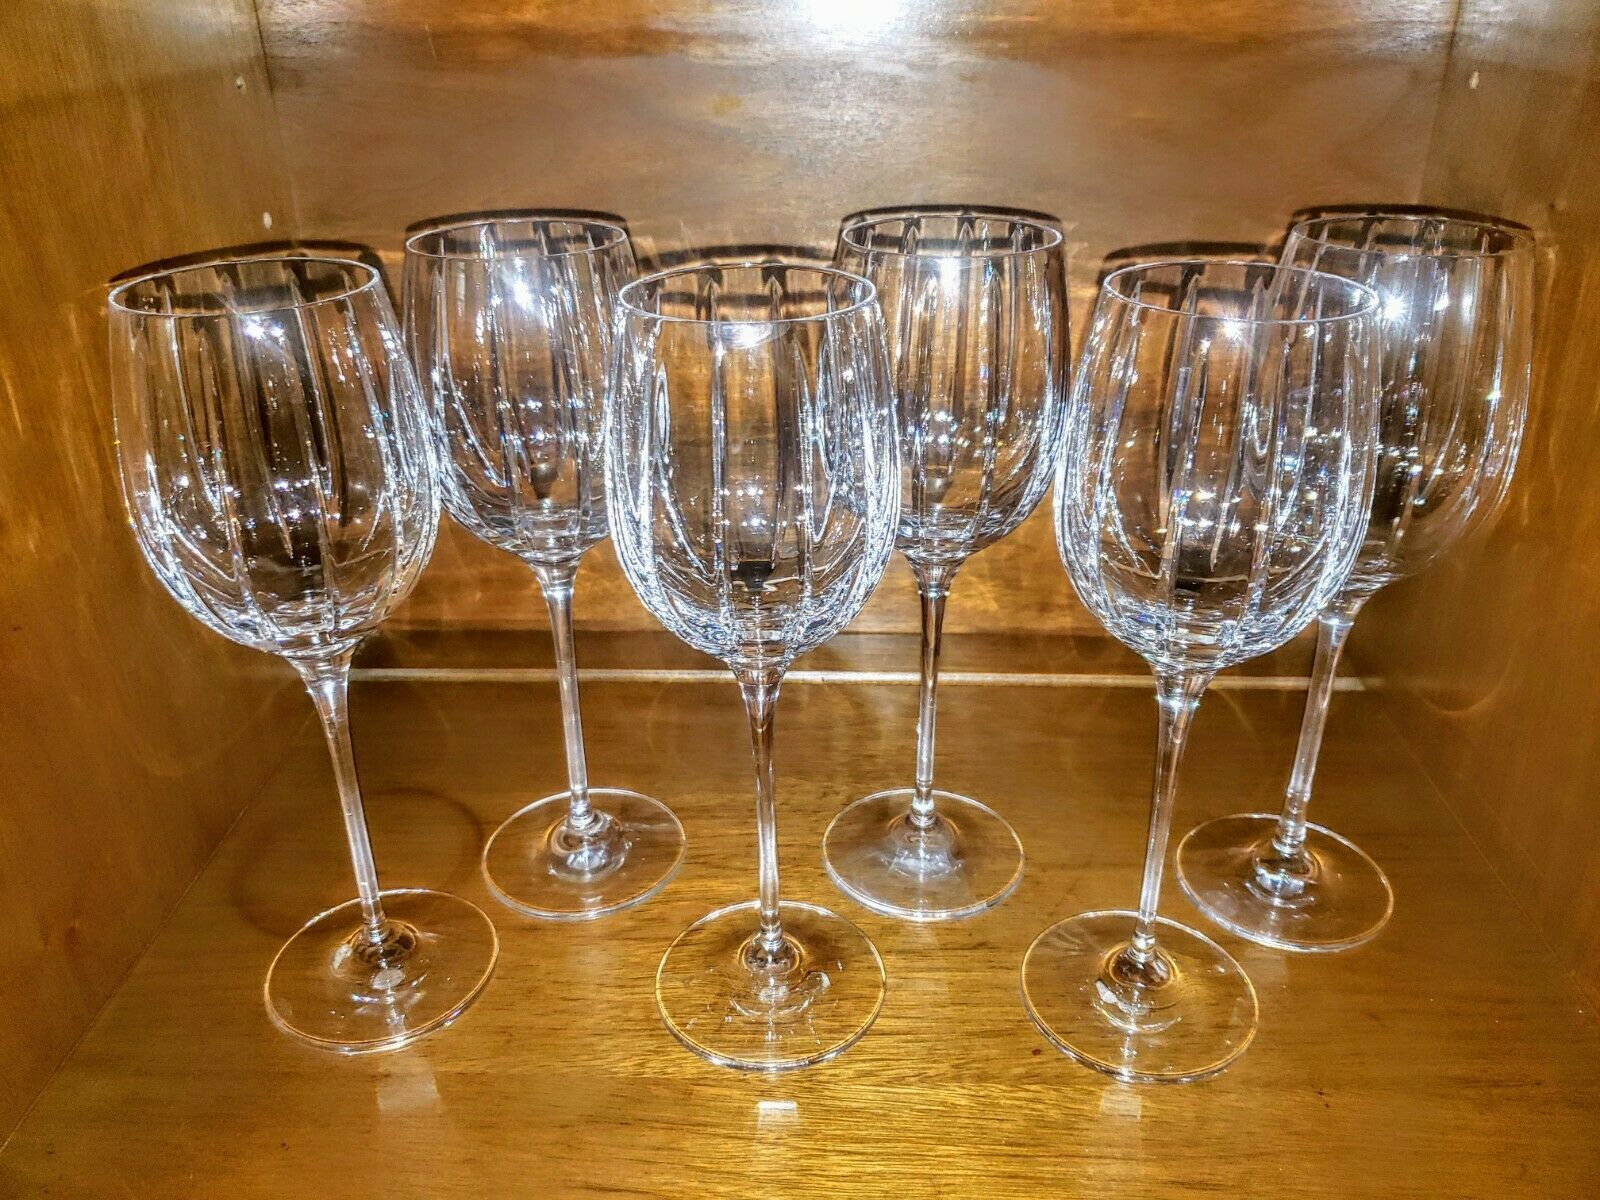 mikasa wine glasses